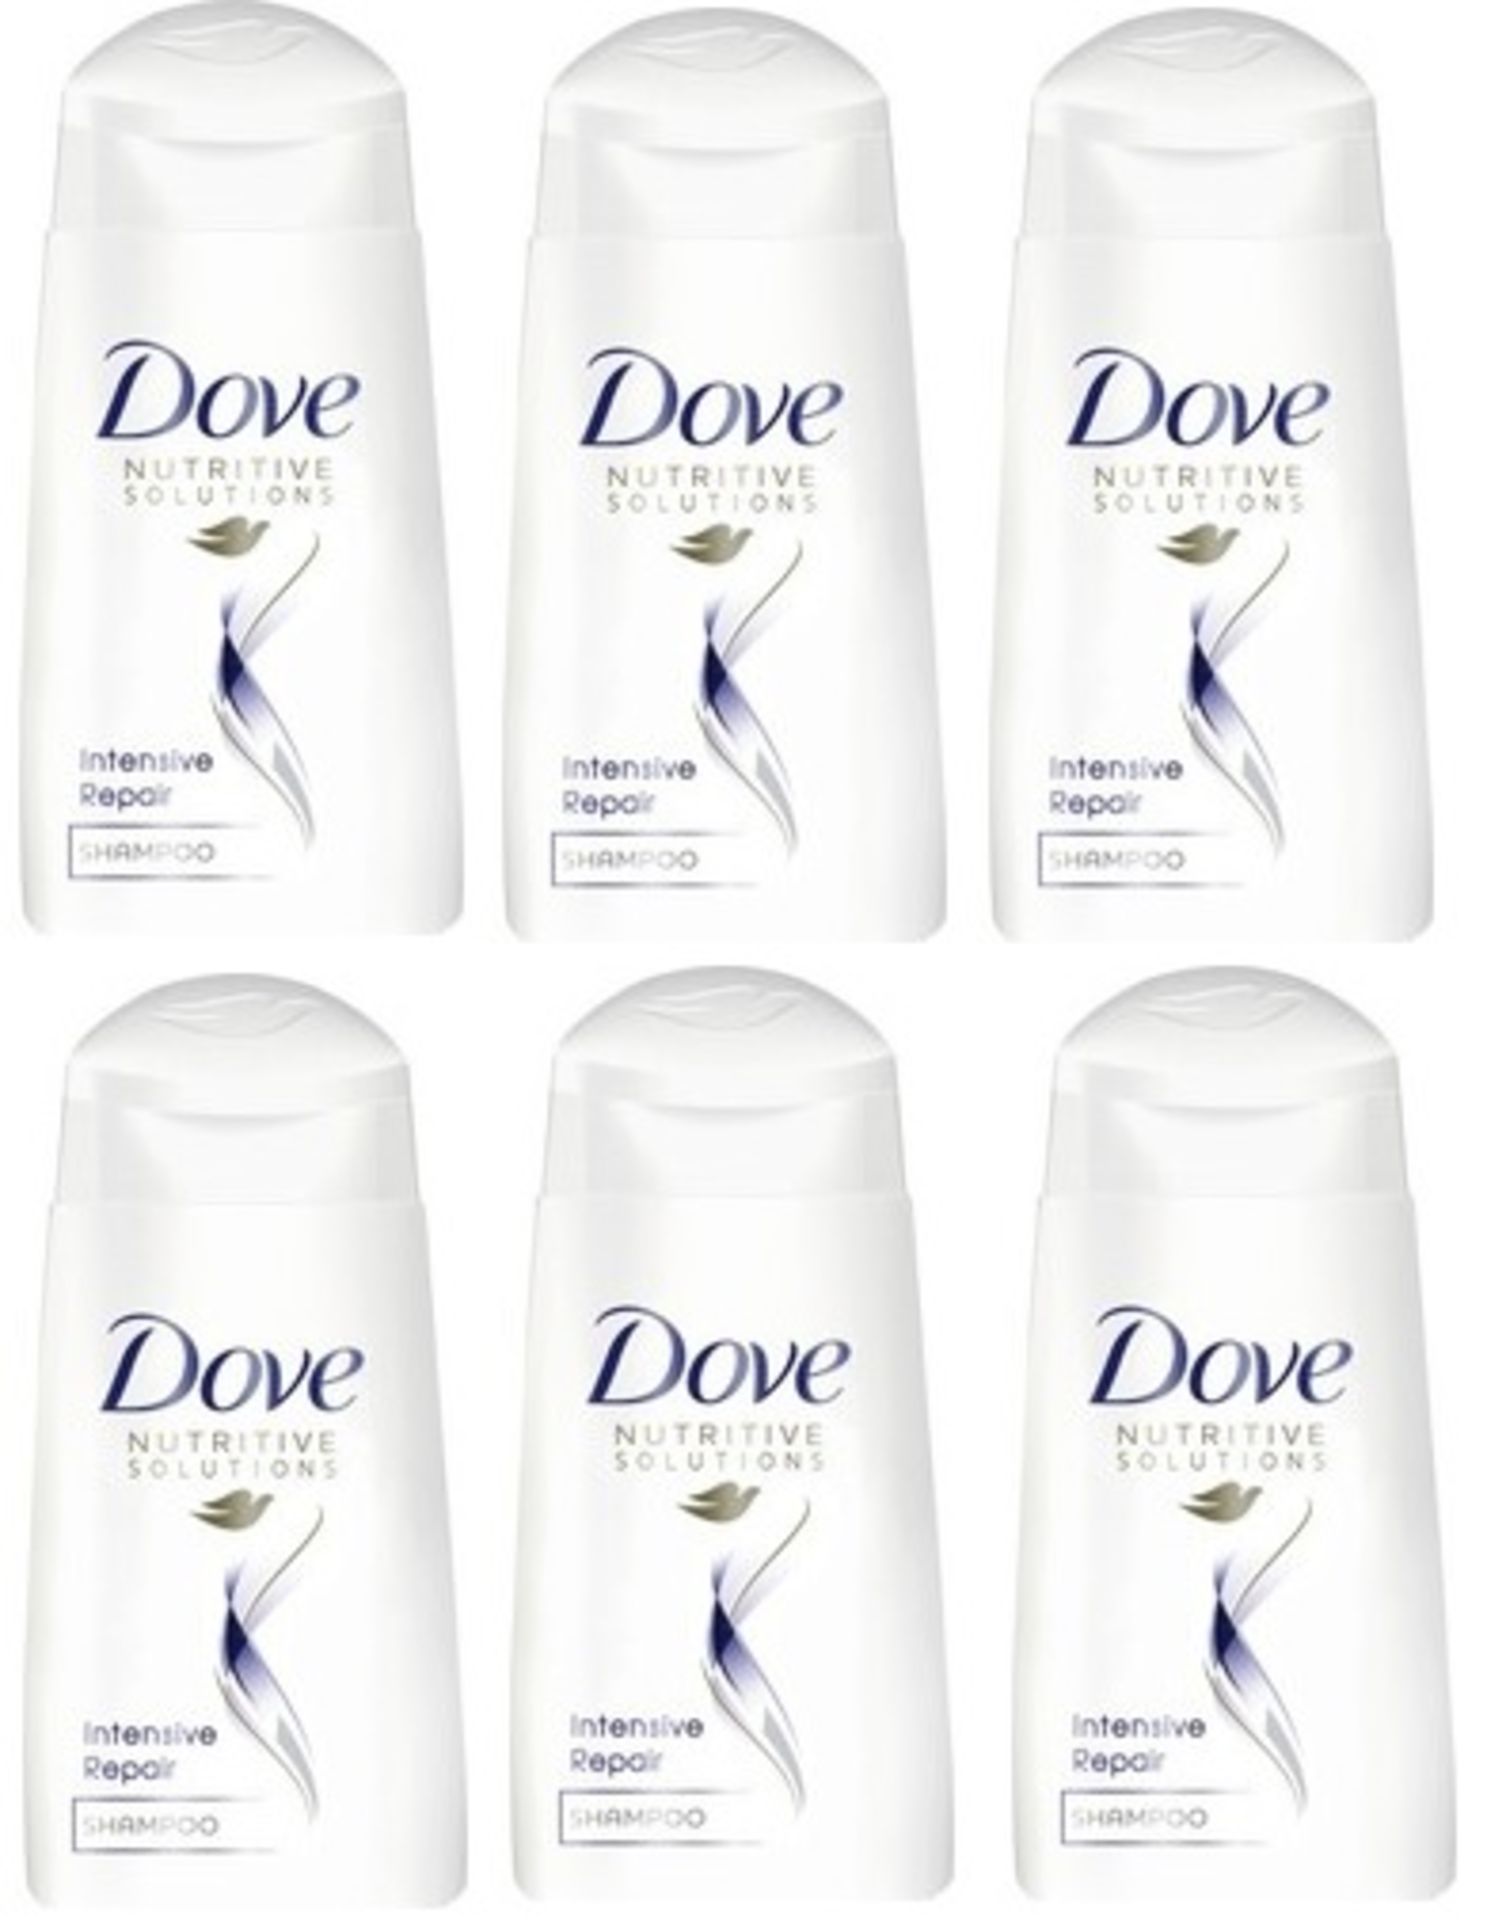 V Brand New Six Bottles Dove Intensive Repair Shampoo - 50ML Per Bottle